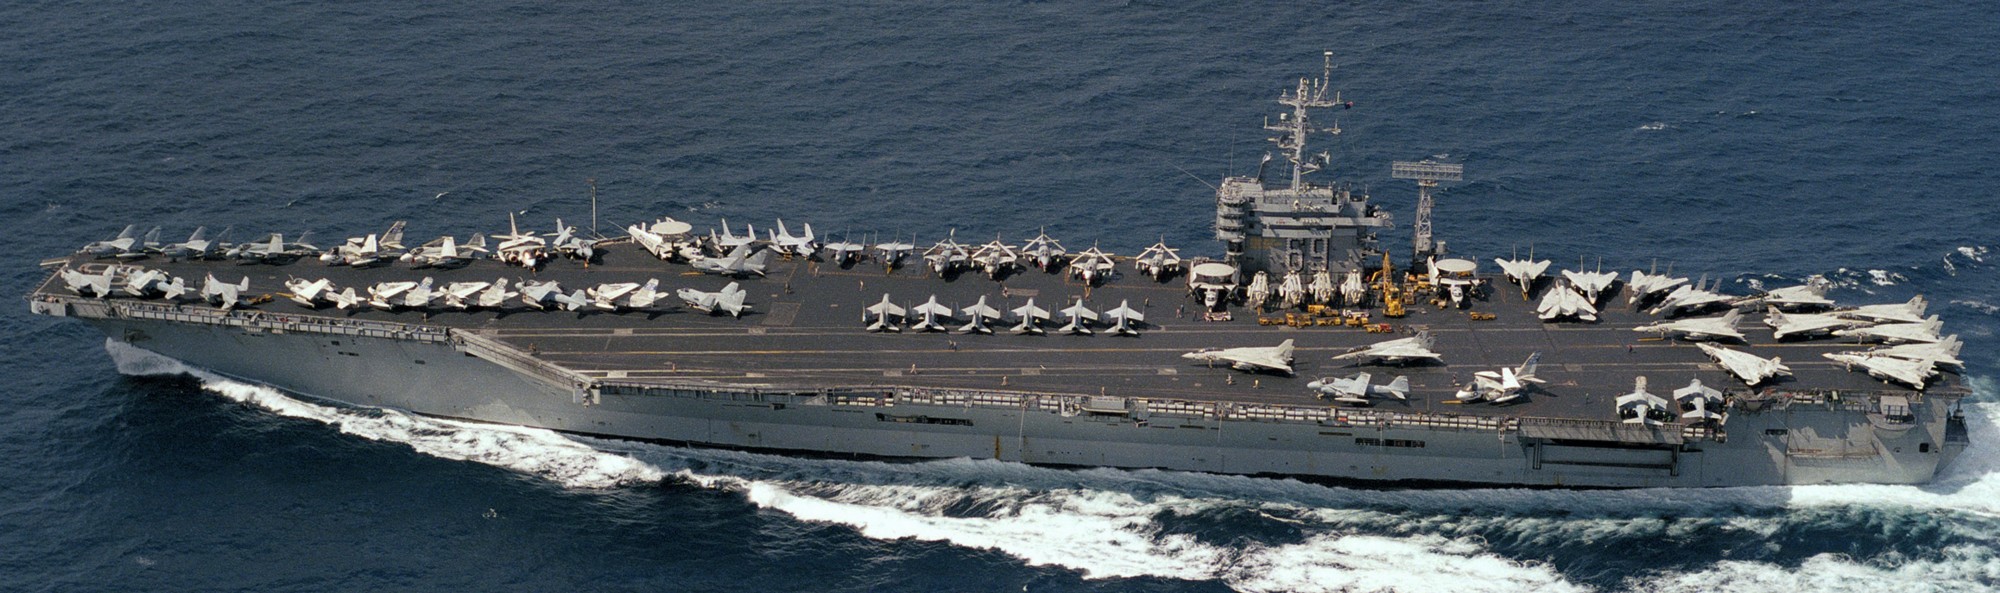 cvn-69 uss dwight d. eisenhower aircraft carrier air wing cvw-7 us navy 314